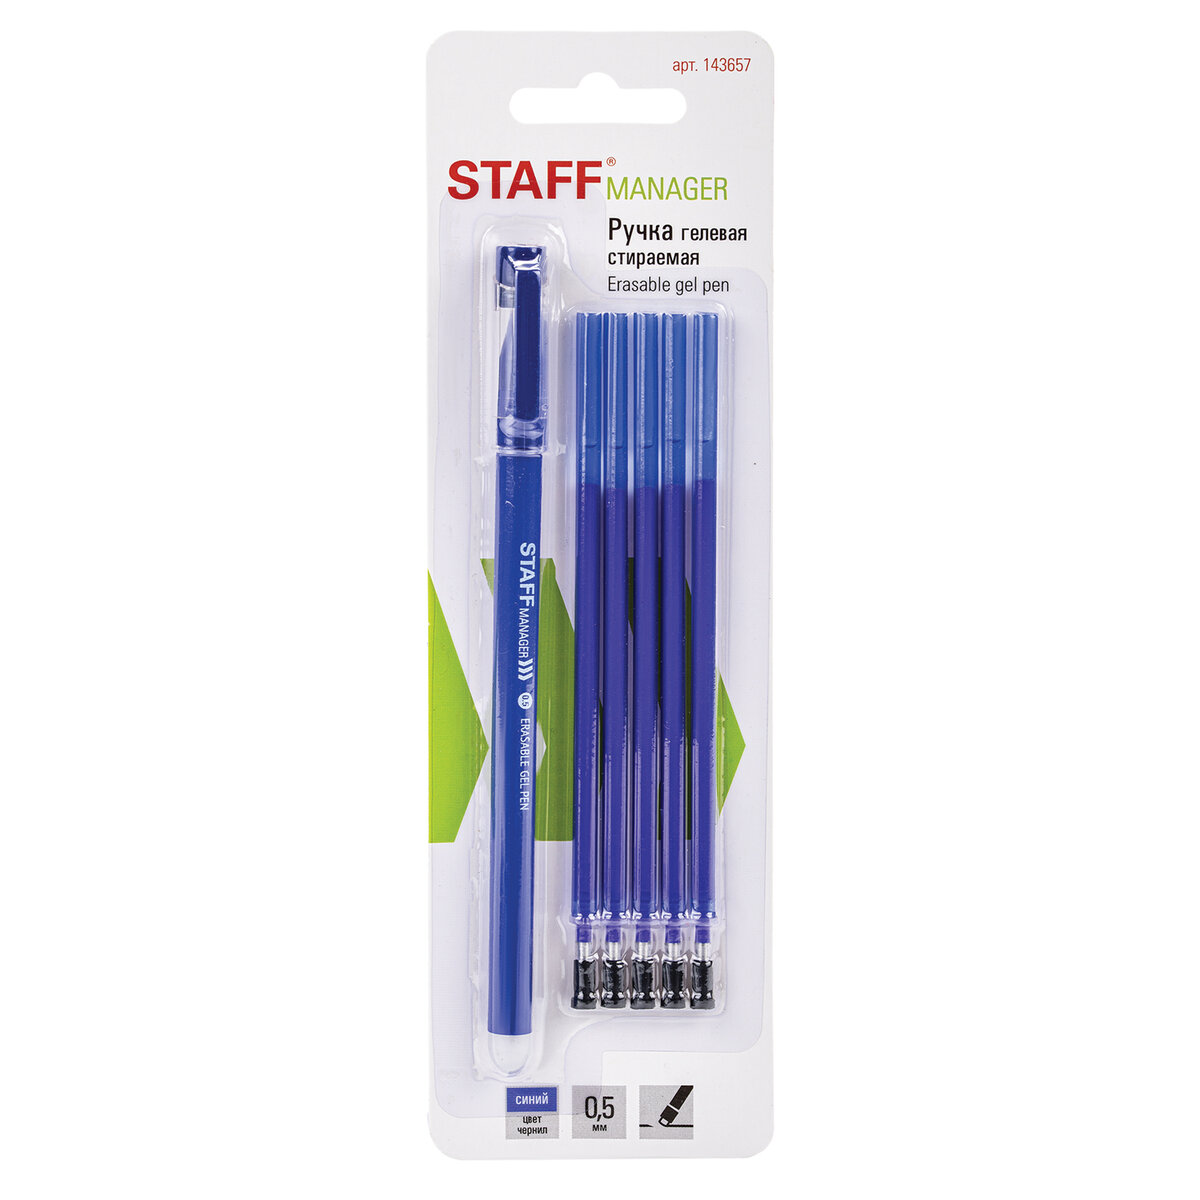 Ручка гелевая Staff стираемая Manager синяя + 5 сменных стержней - фото 2